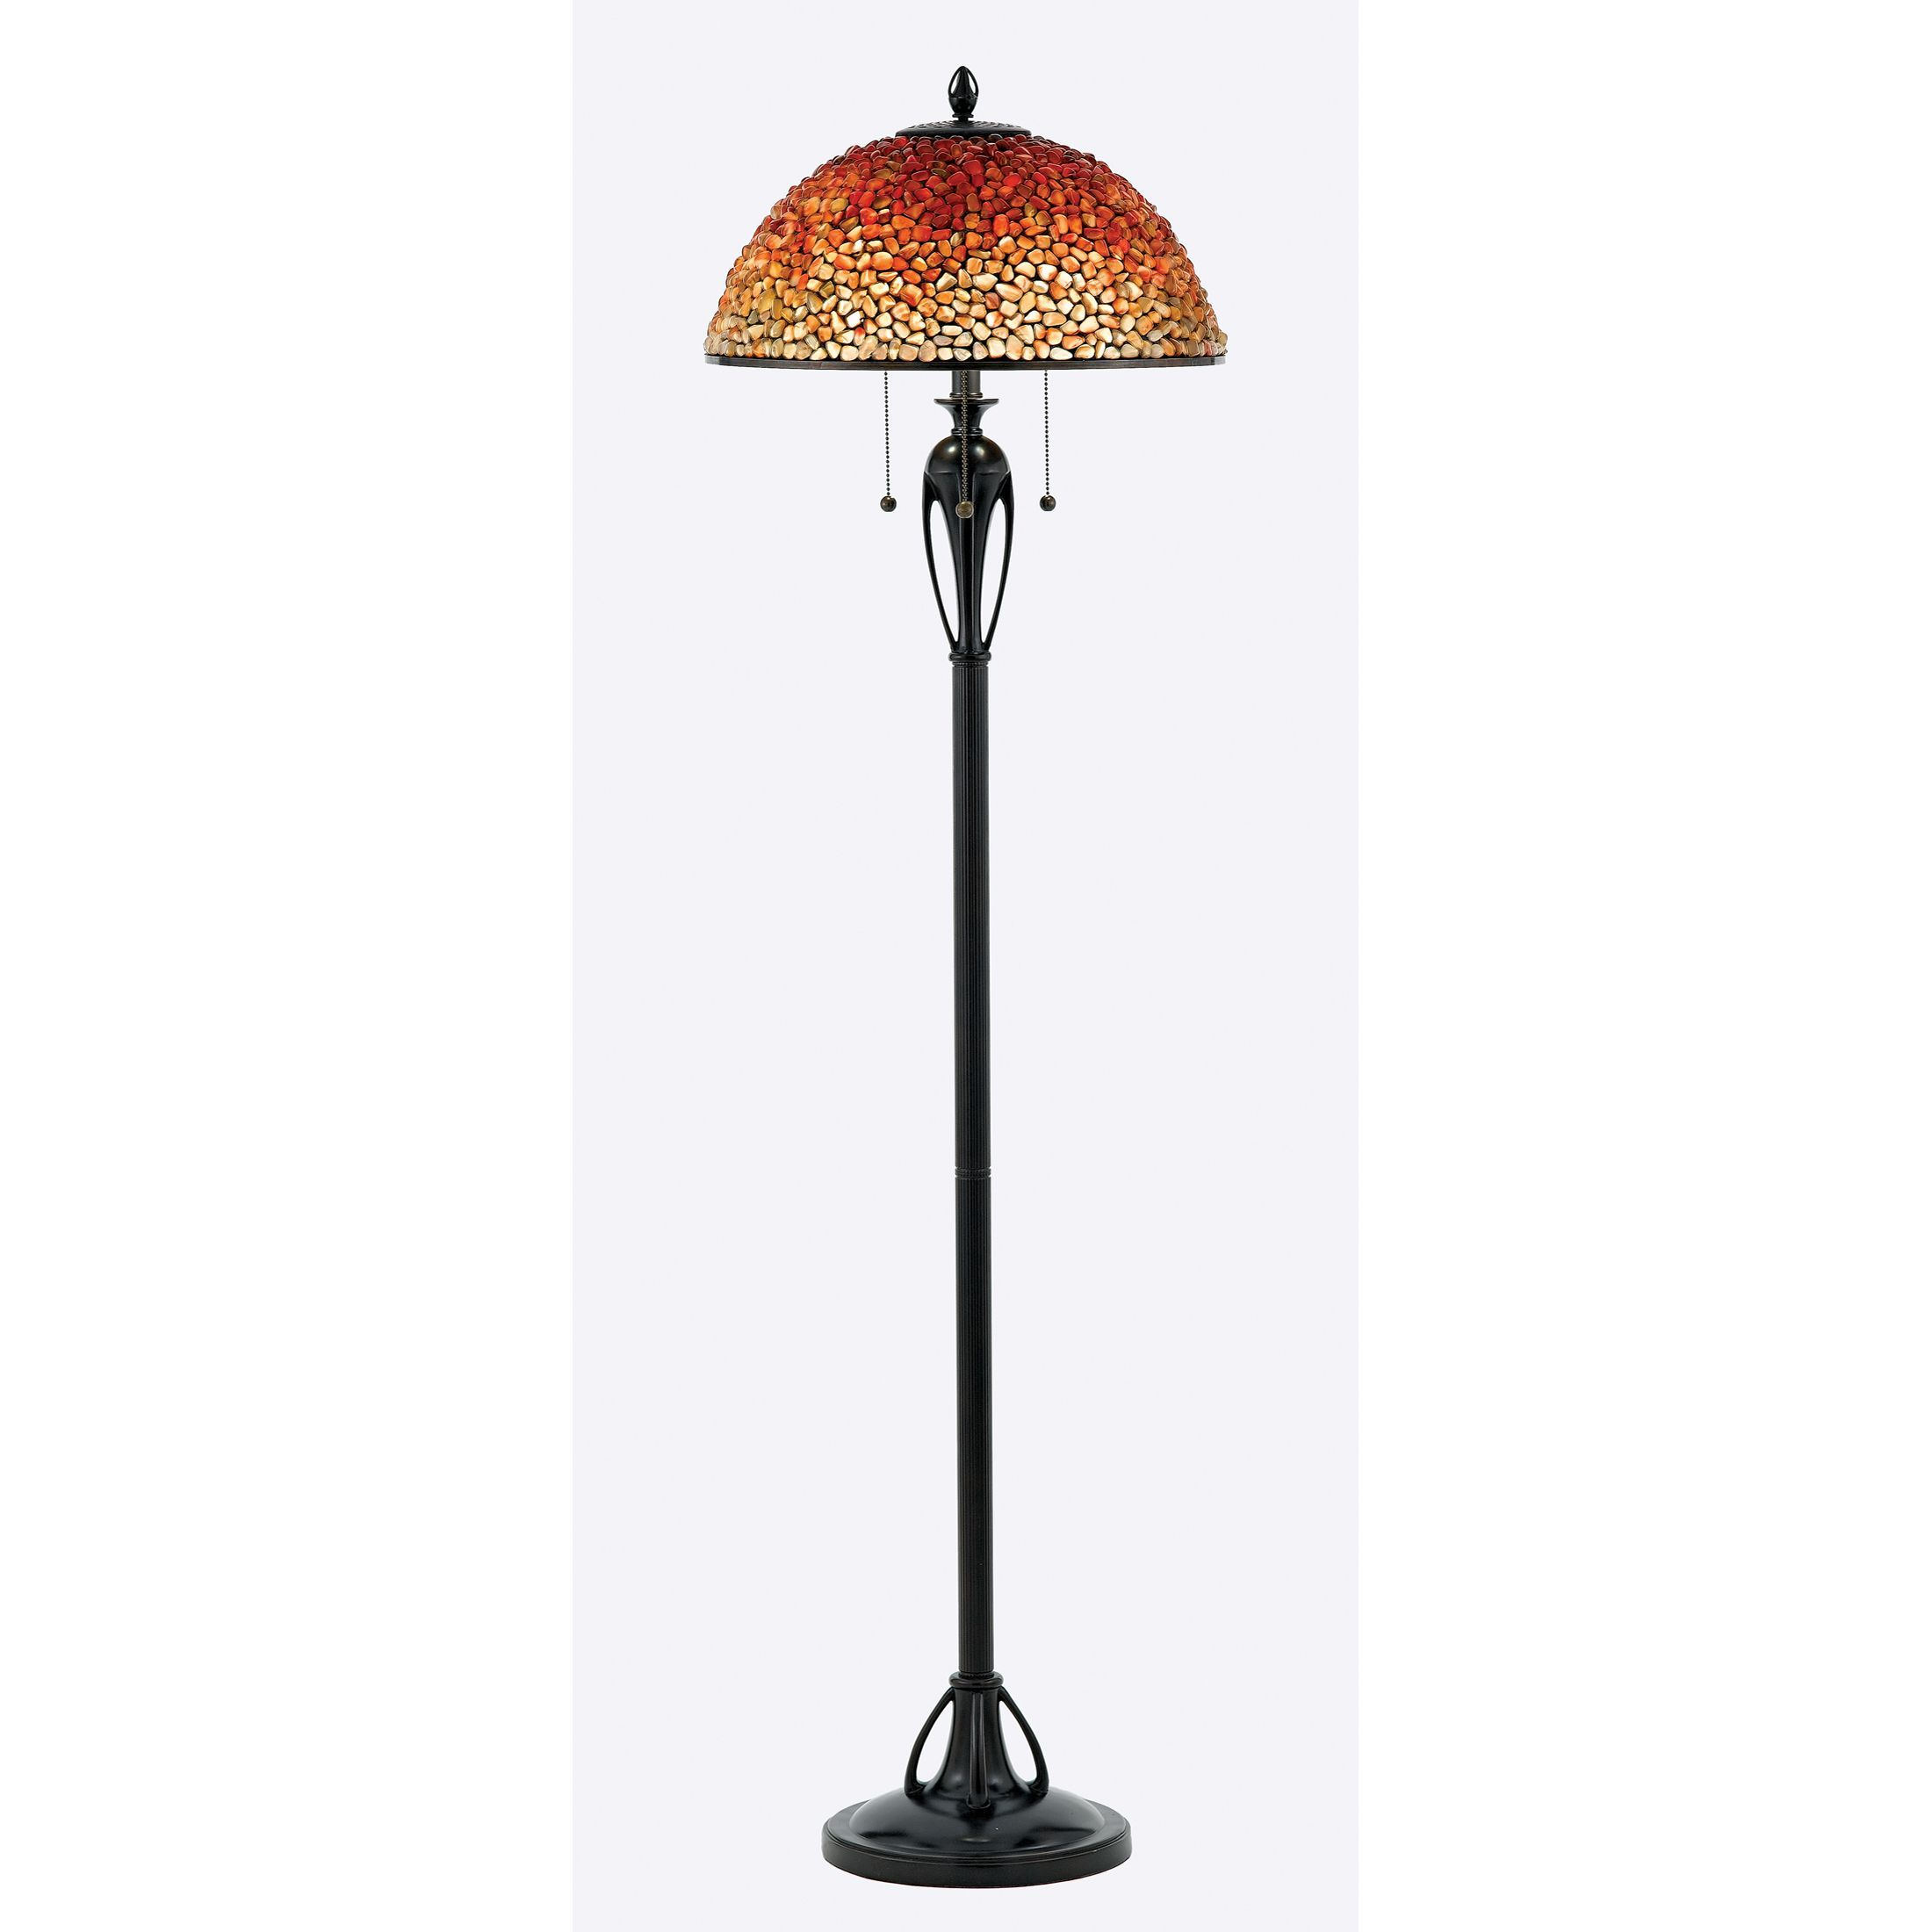 Pomez Floor Lamp Quoizel pertaining to sizing 2200 X 2200